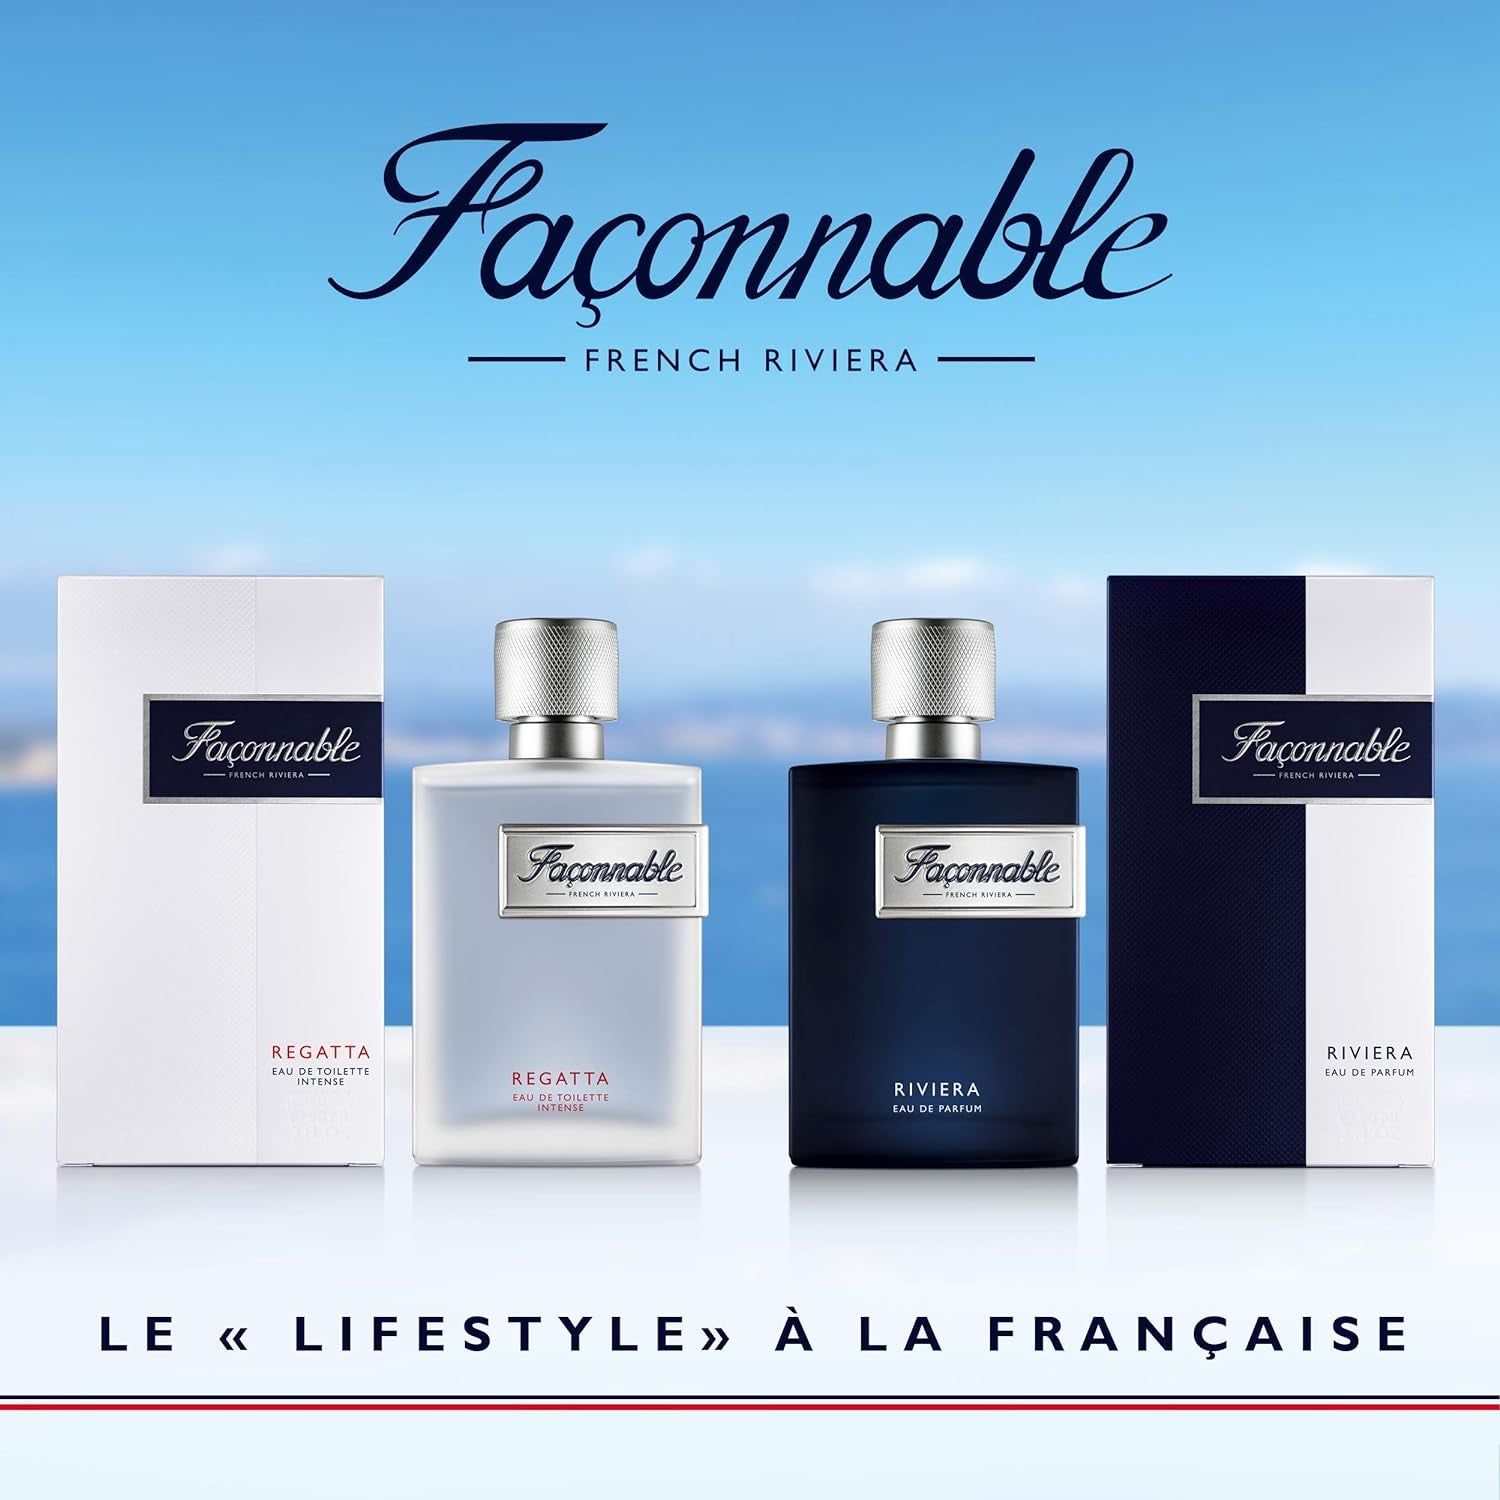 Façonnable - Riviera 90ml (3 Fl Oz) - Eau de Parfum for Men - Woody & Aromatic Scents